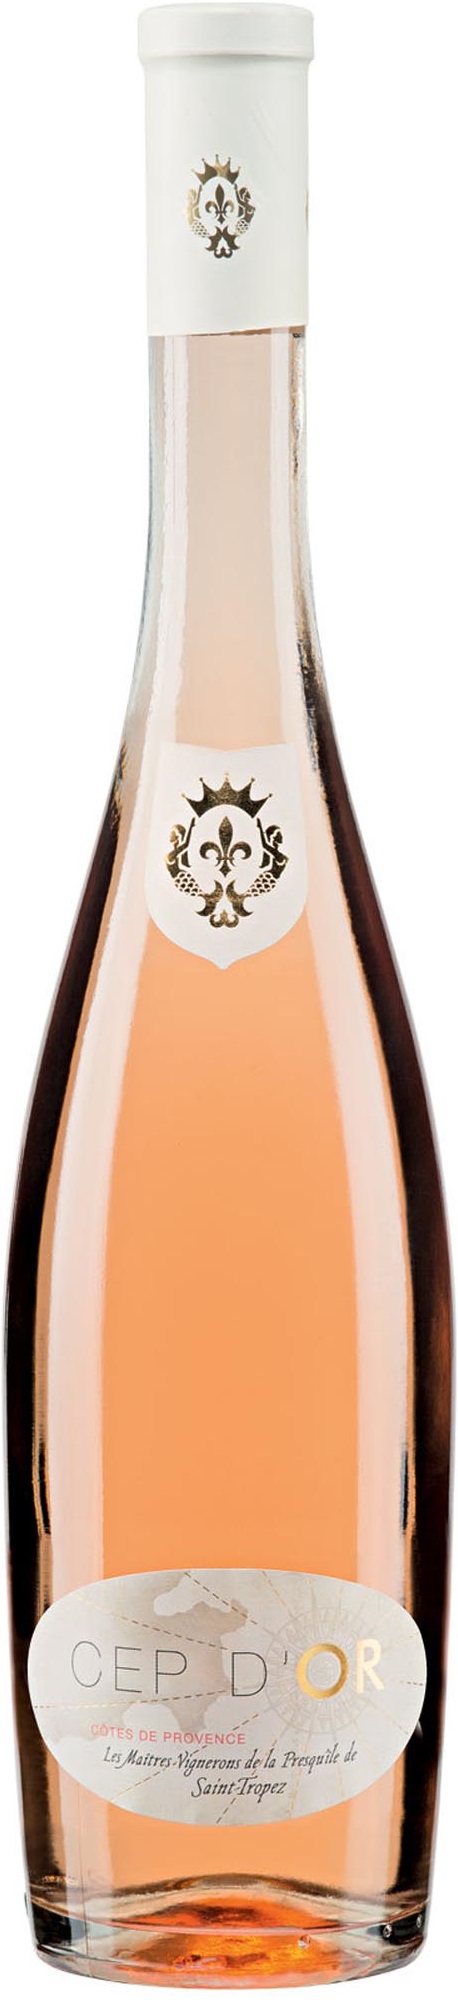 Côtes de Provence Cep d'Or Rosé